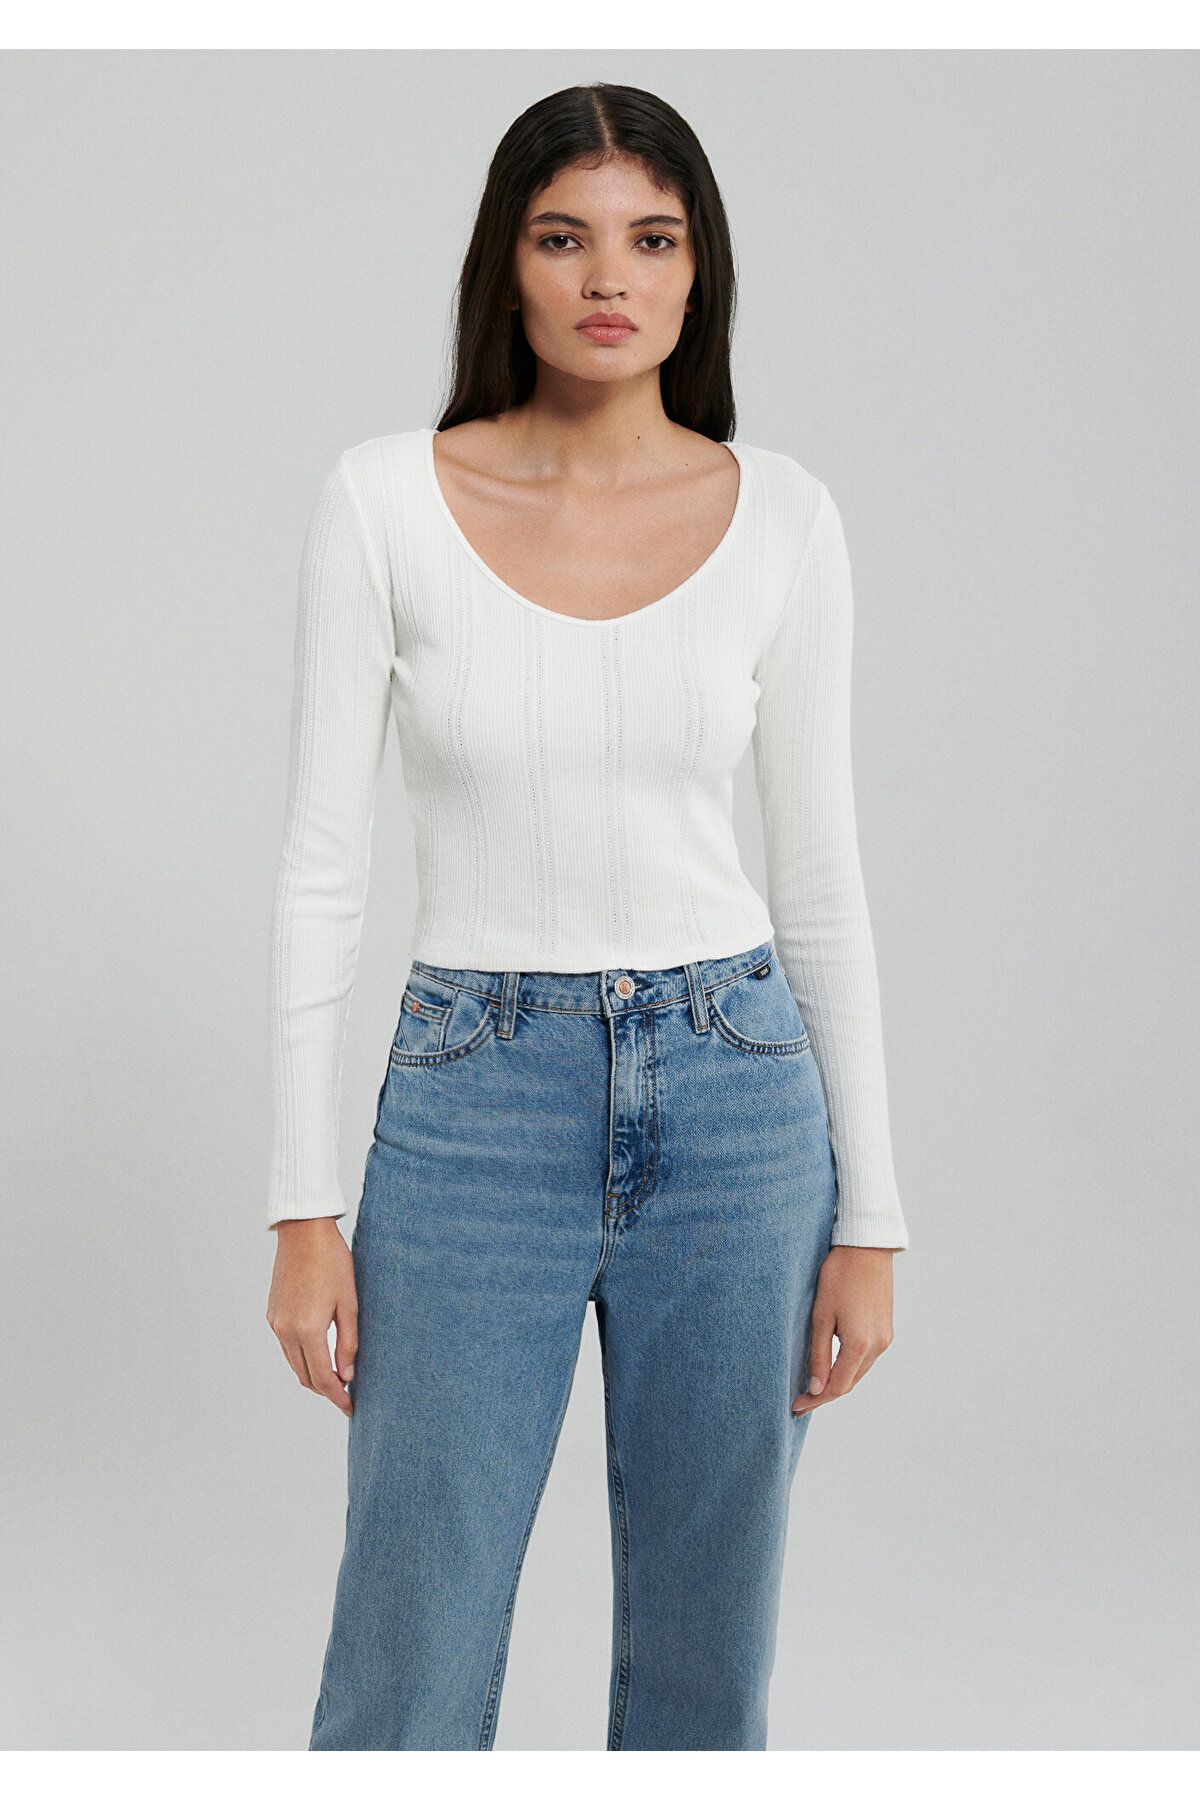 Mavi آستین بلند تی شرت محصول سفید / بخش کوتاه 1612158-70057